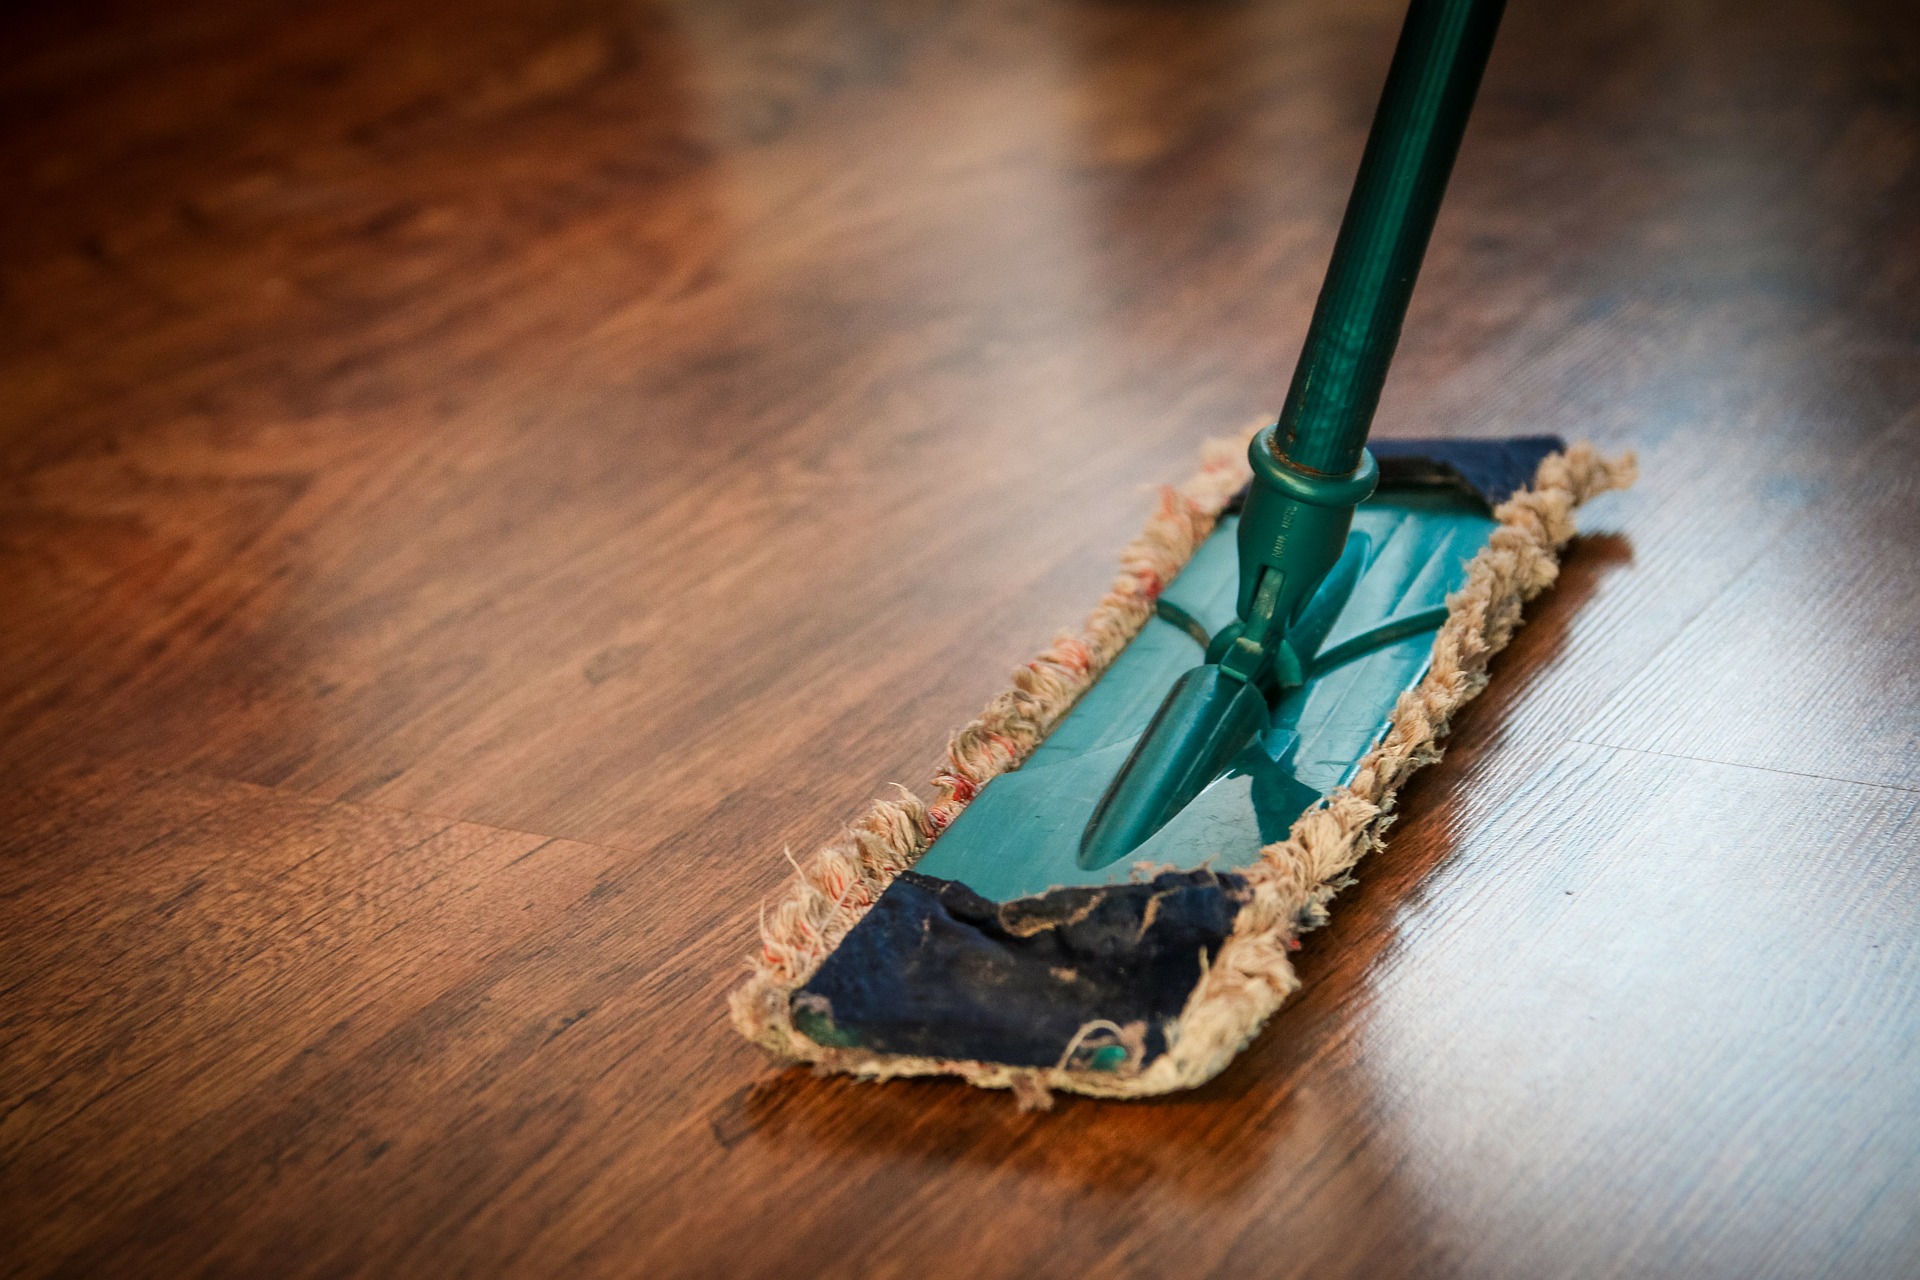 Comment gérer le nettoyage de son appartement ?